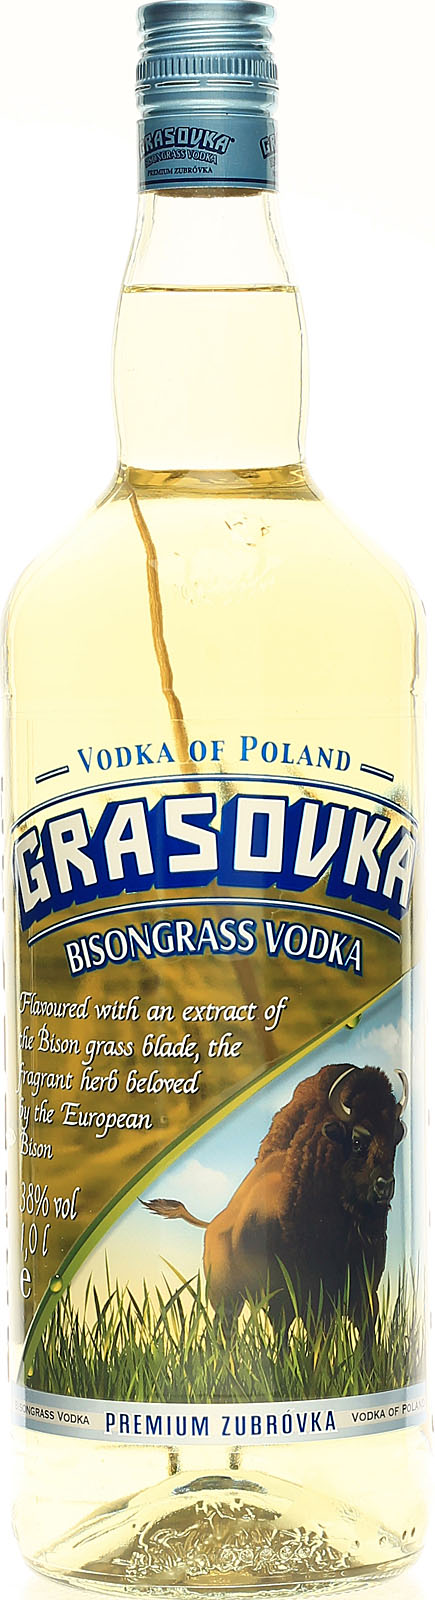 Grasovka Bison Grass Vodka hier Büffelgras Liter mit 1